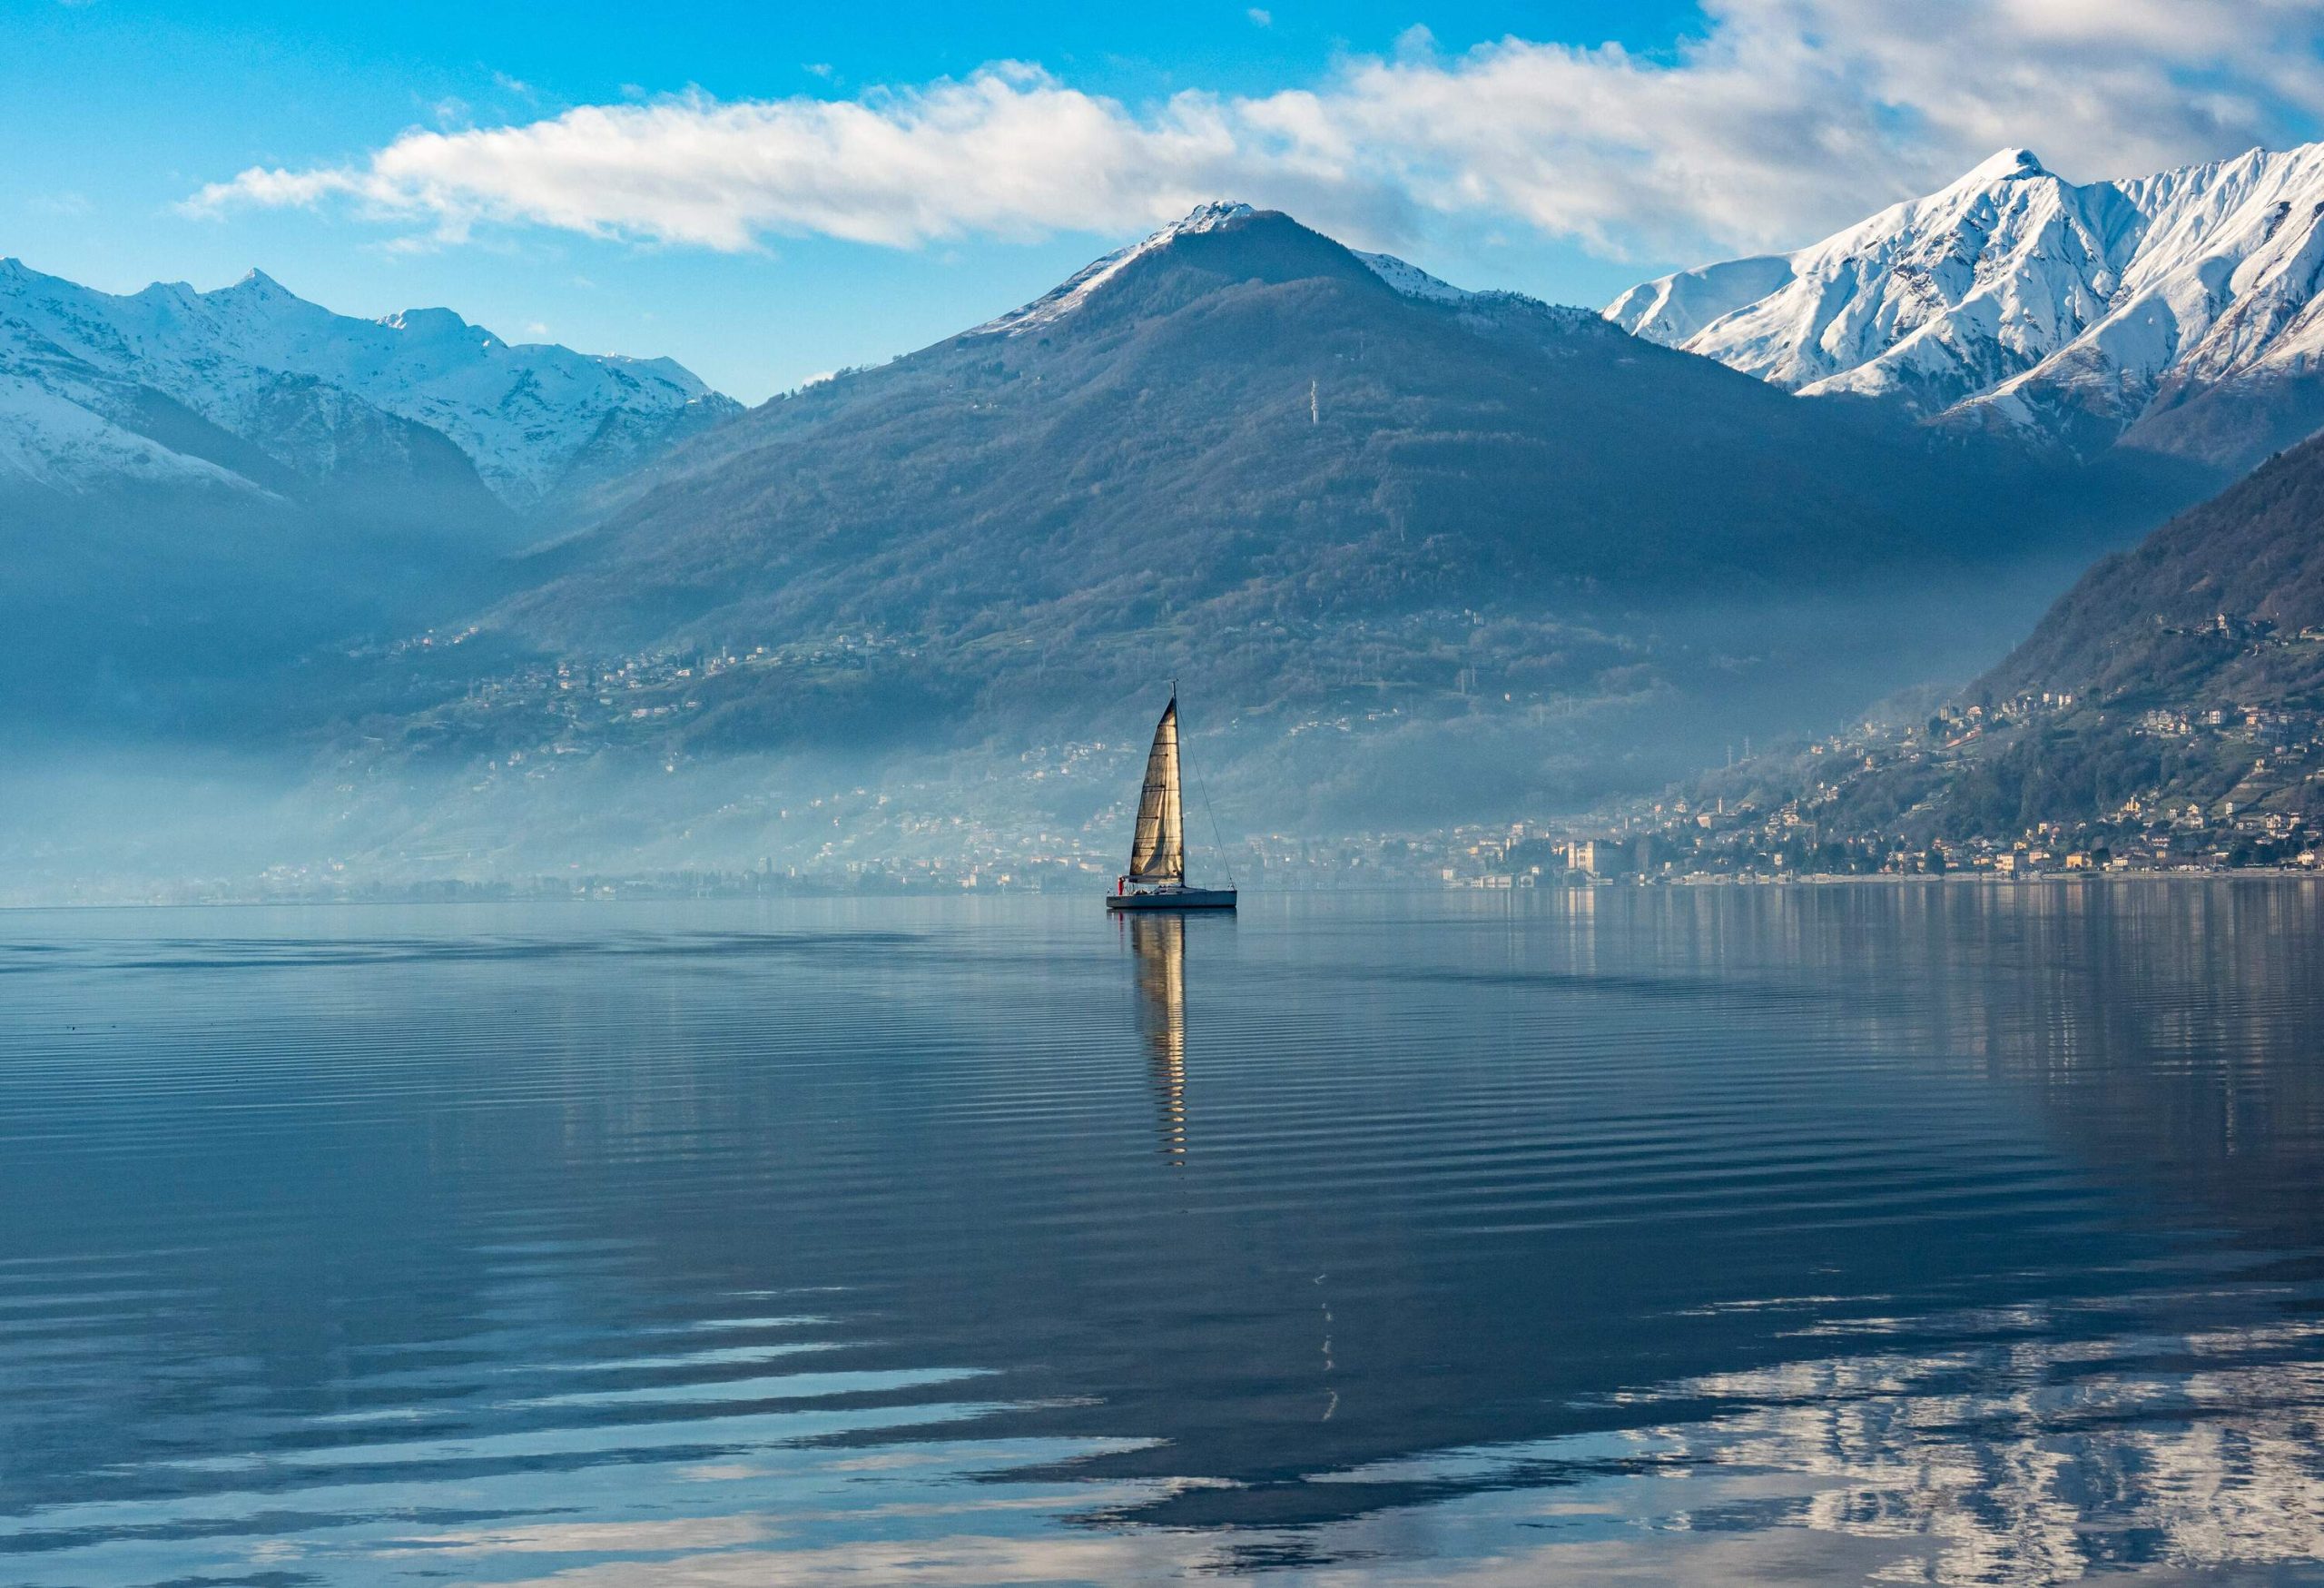 Sailboat on Lake Como at morning hours.